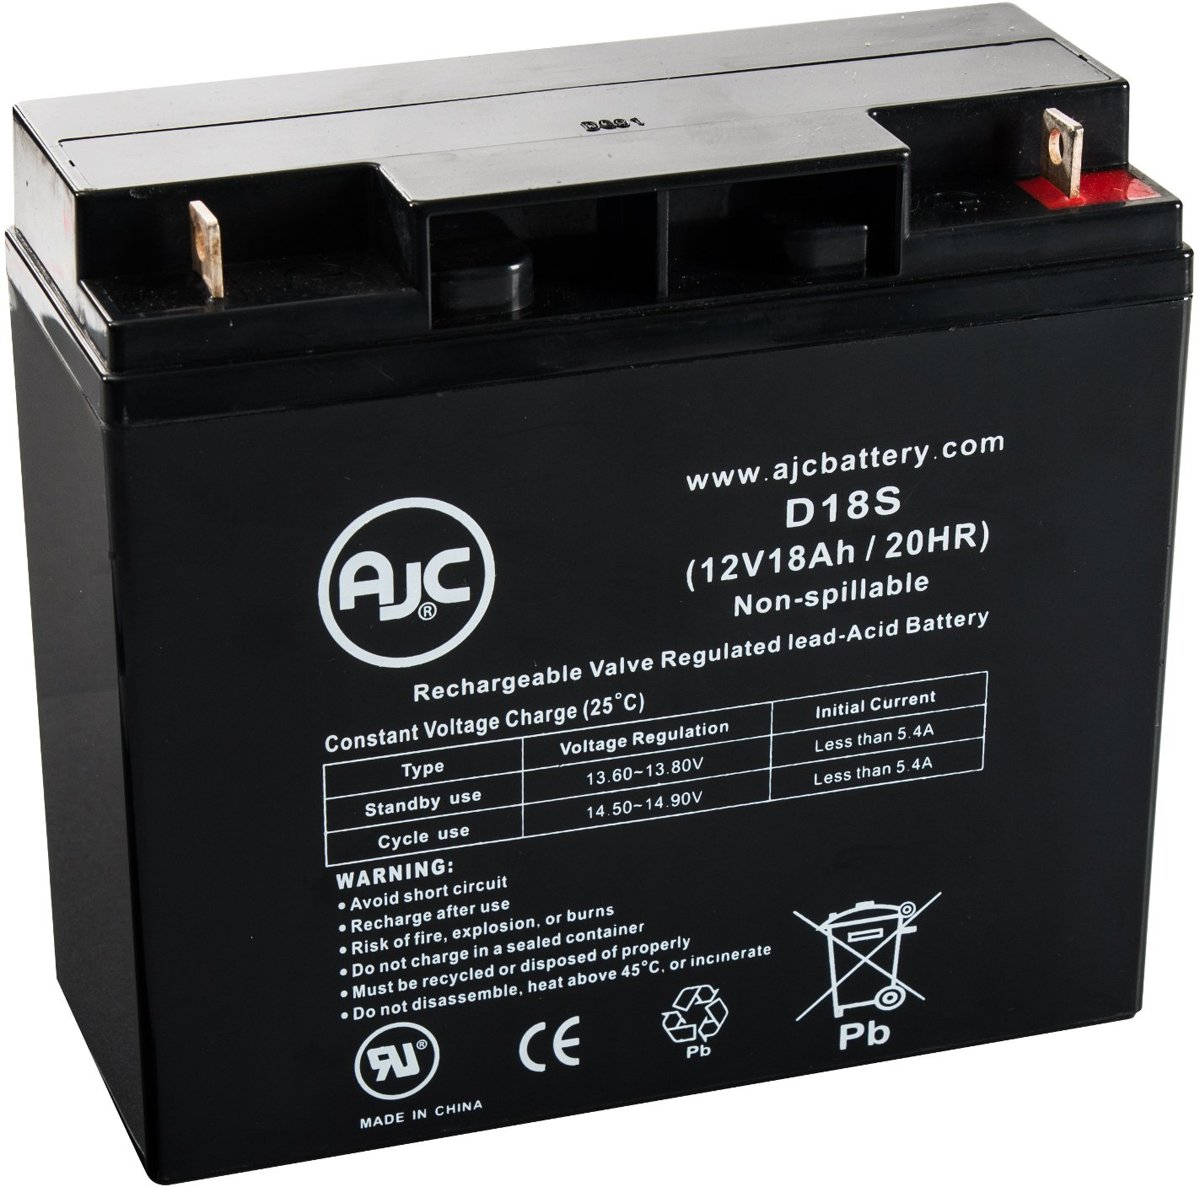 AJC� battery compatibel met Sonnenschein A412/12 SR 12V 18Ah Lood zuur accu